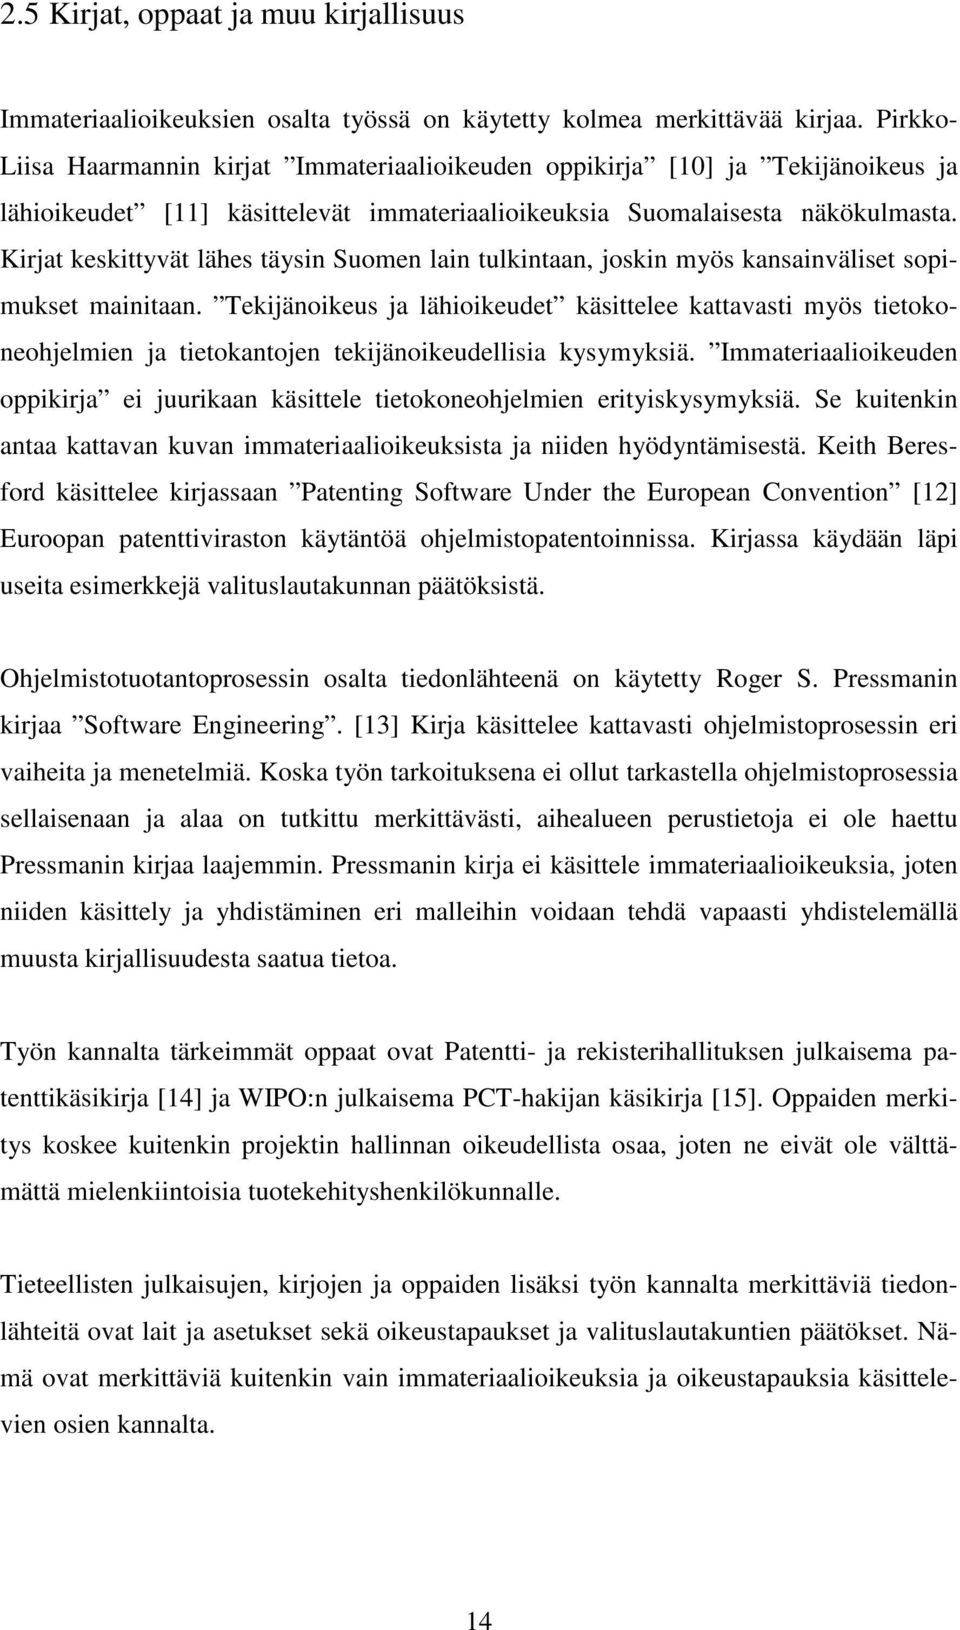 Kirjat keskittyvät lähes täysin Suomen lain tulkintaan, joskin myös kansainväliset sopimukset mainitaan.